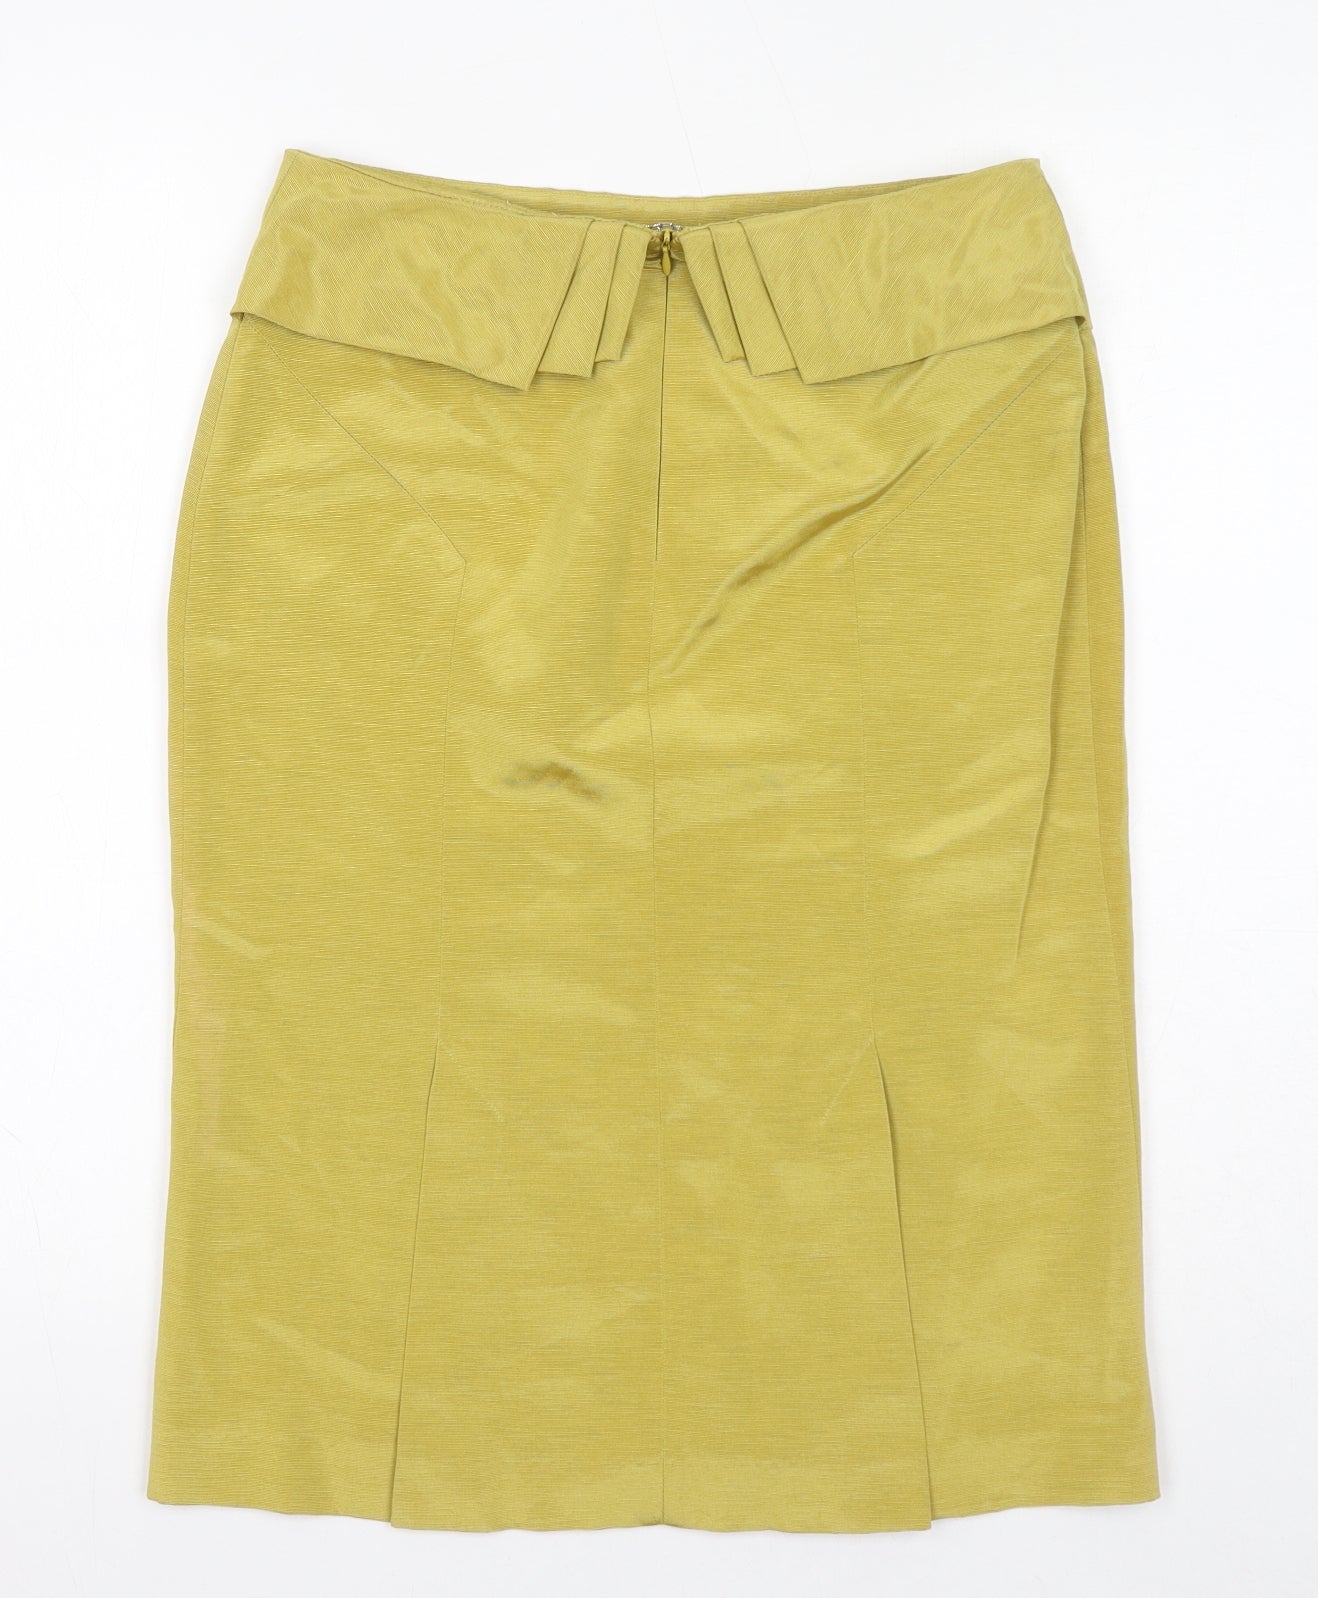 Reiss Womens Yellow Cotton A-Line Skirt Size 10 Zip